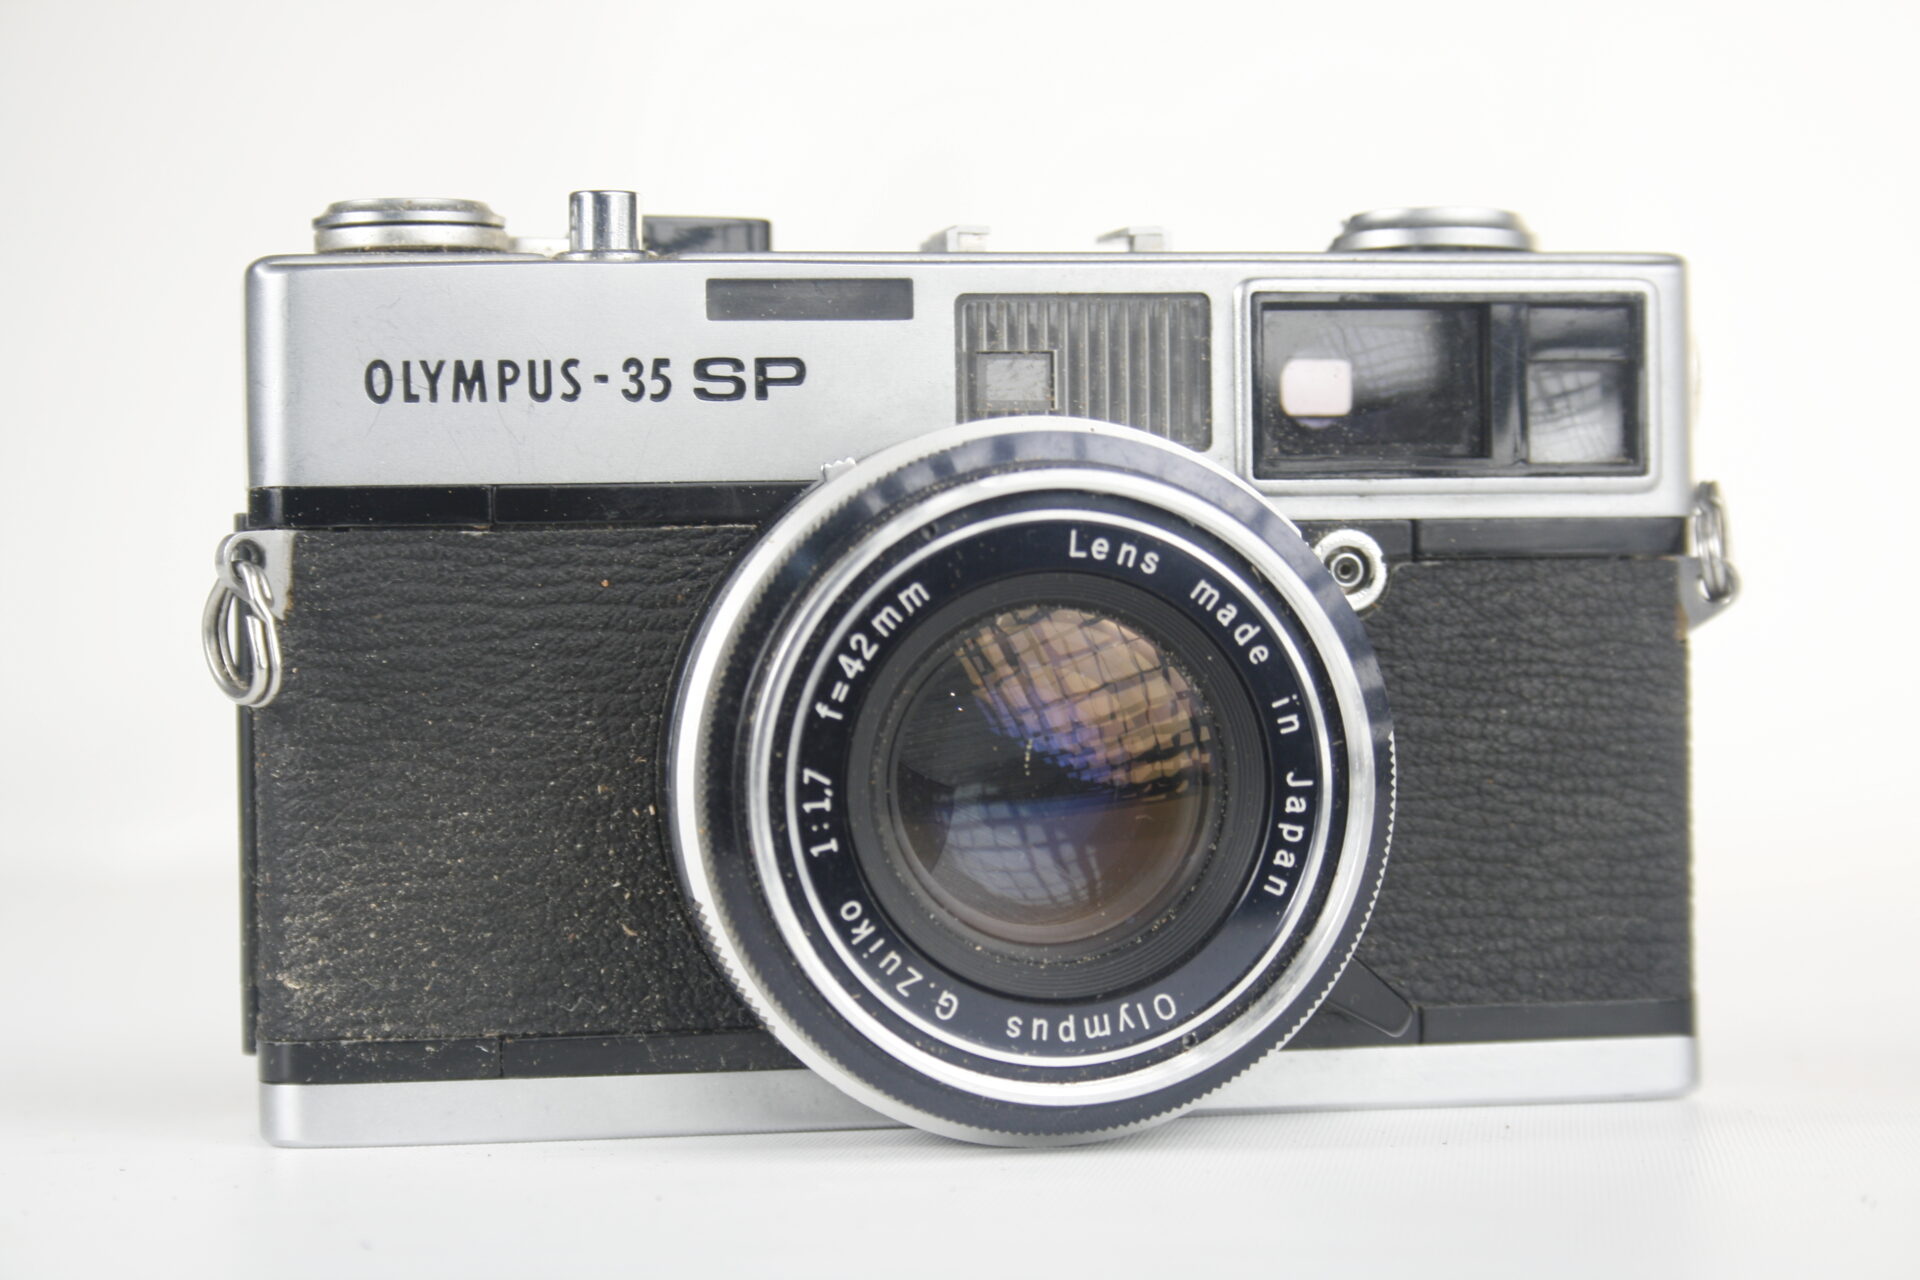 Olympus-35 SP. 35mm rangefinder camera. 1969. Japan.